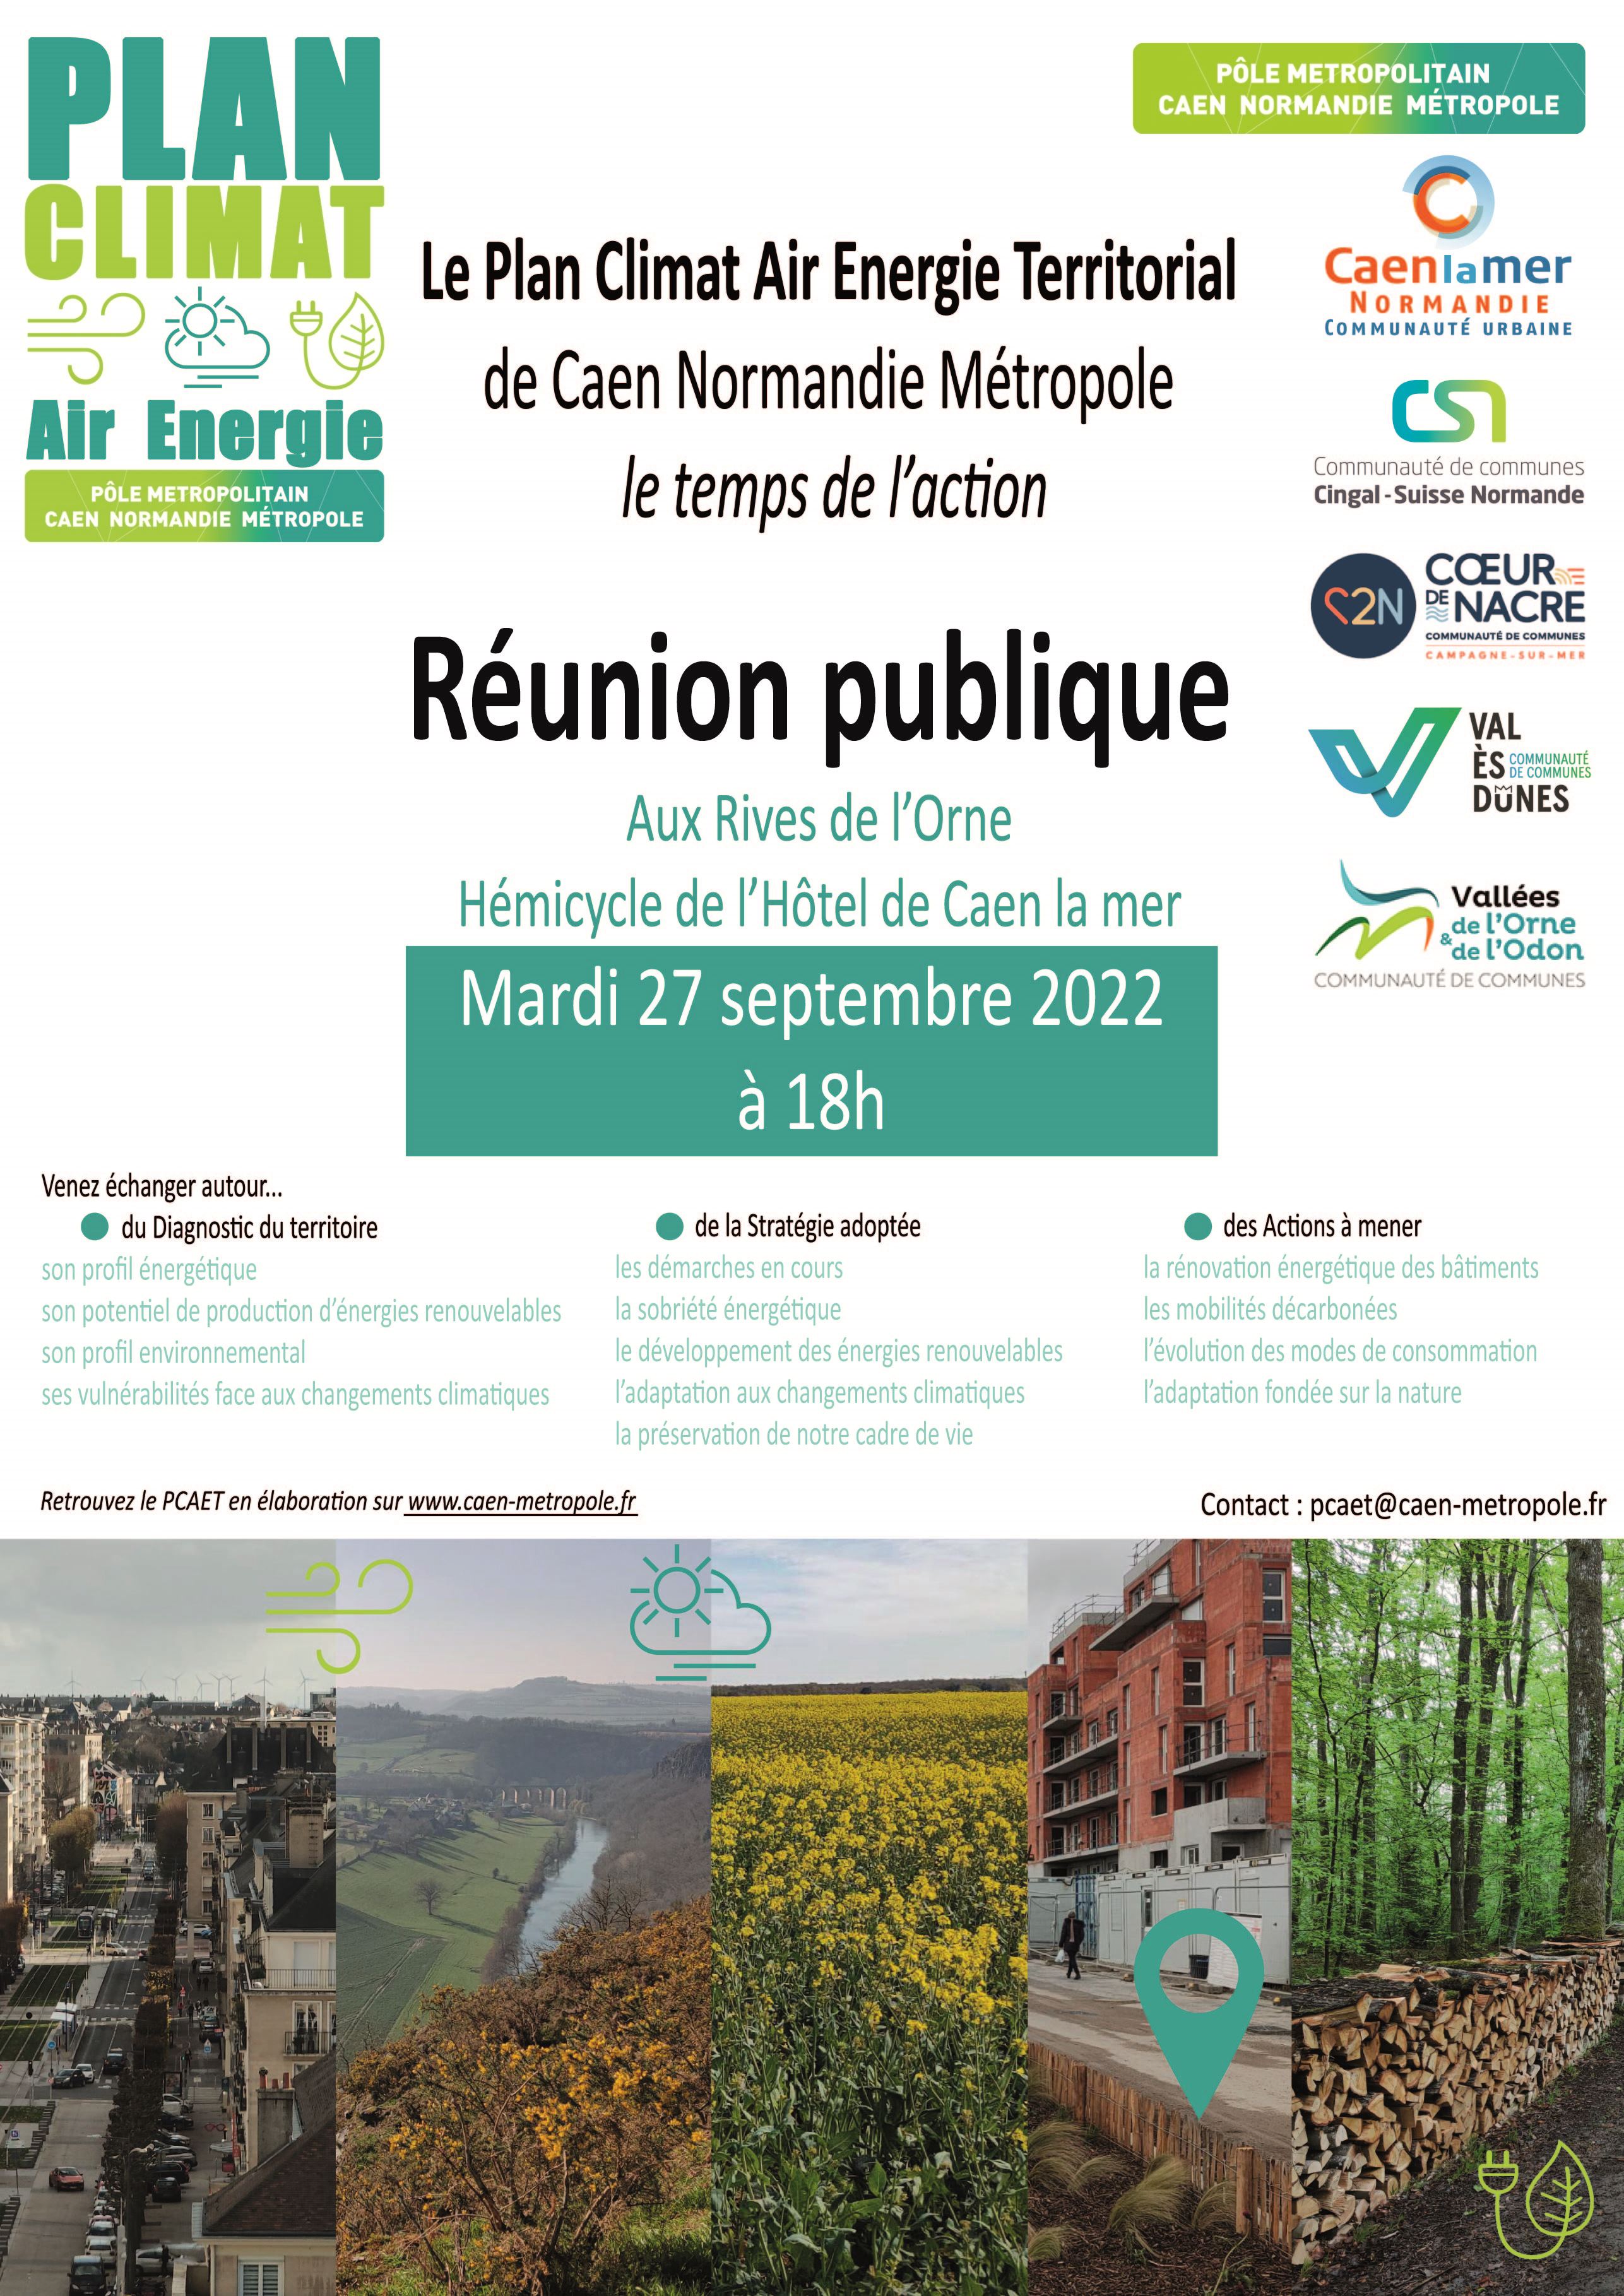 Réunion publique "Le Plan Climat Air Energie Territorial" de Caen Normandie Métropole